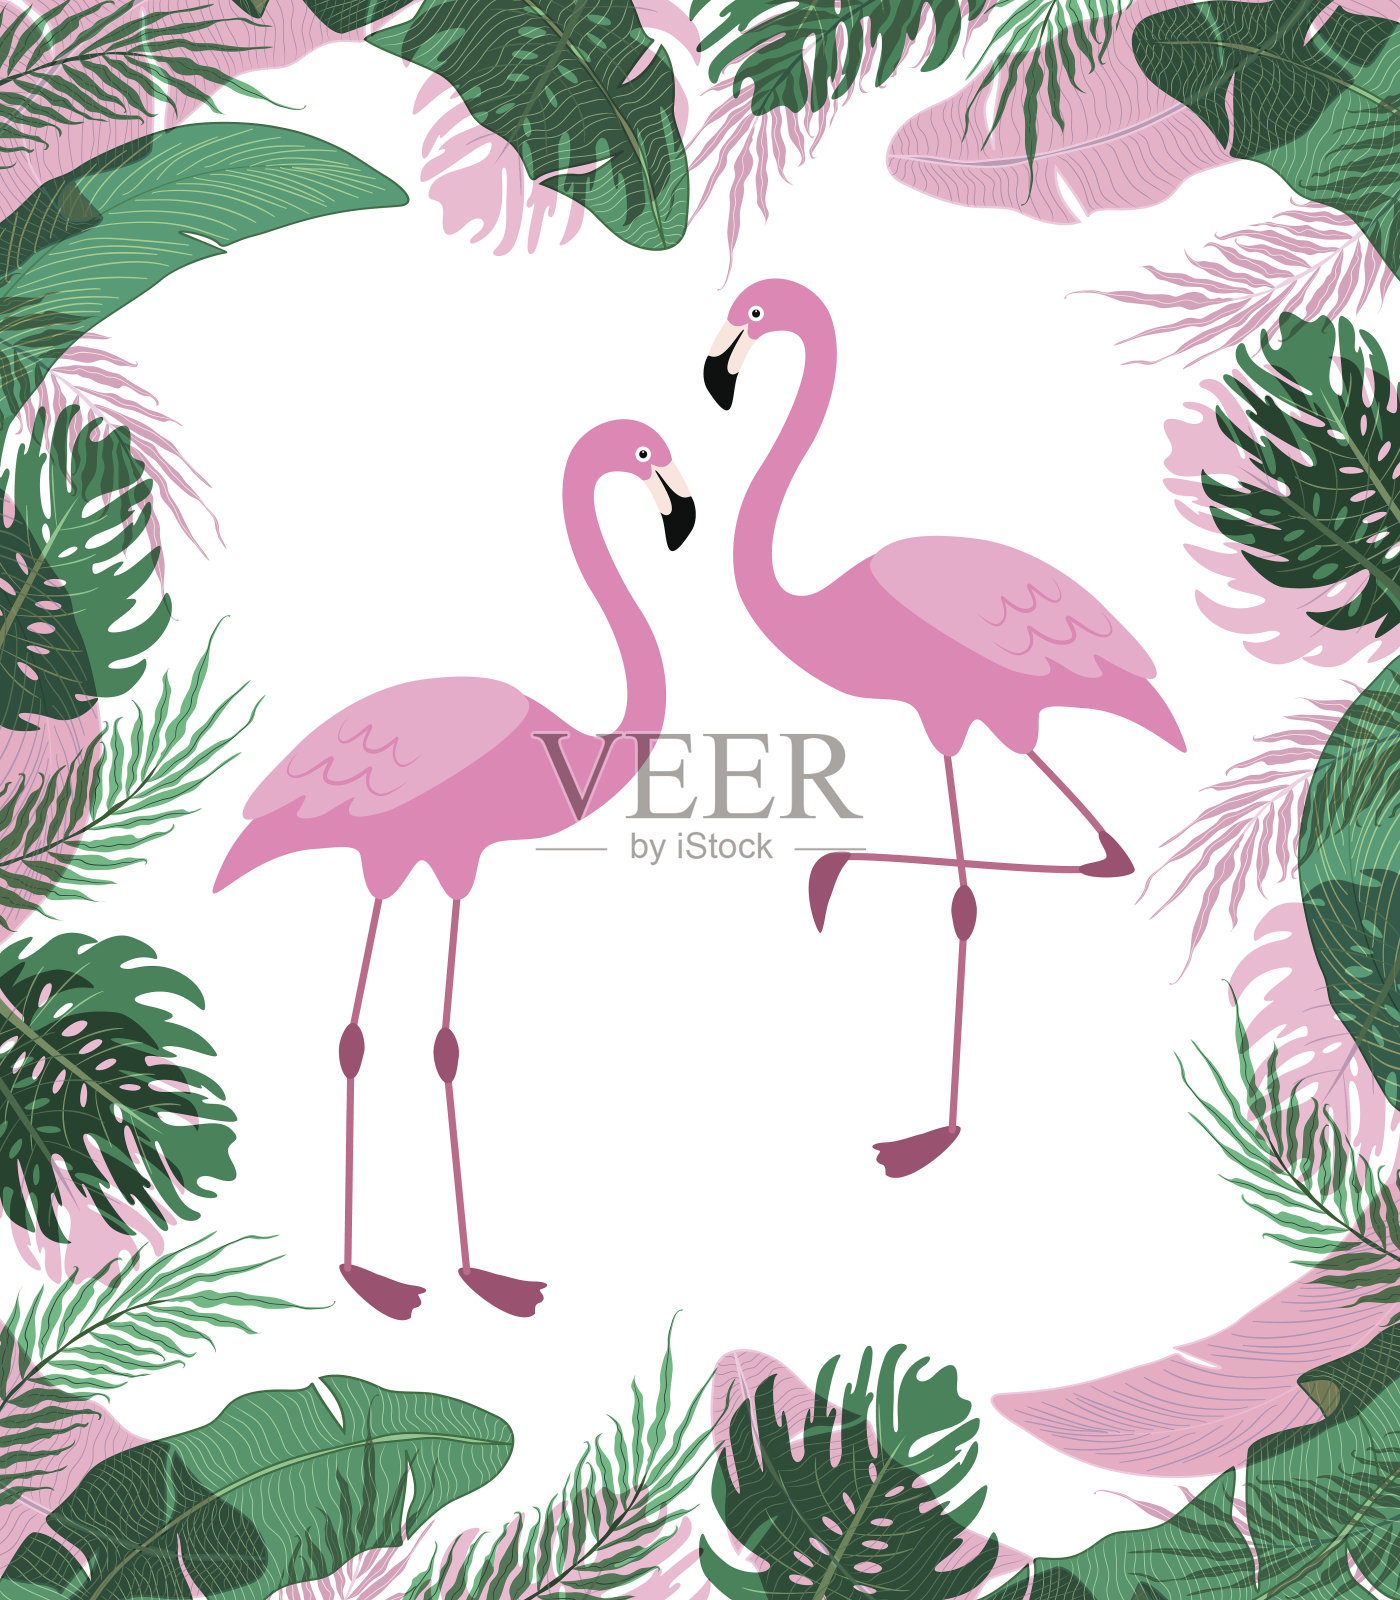 可爱的异国情调的热带背景与卡通人物的两个粉红色火烈鸟插画图片素材